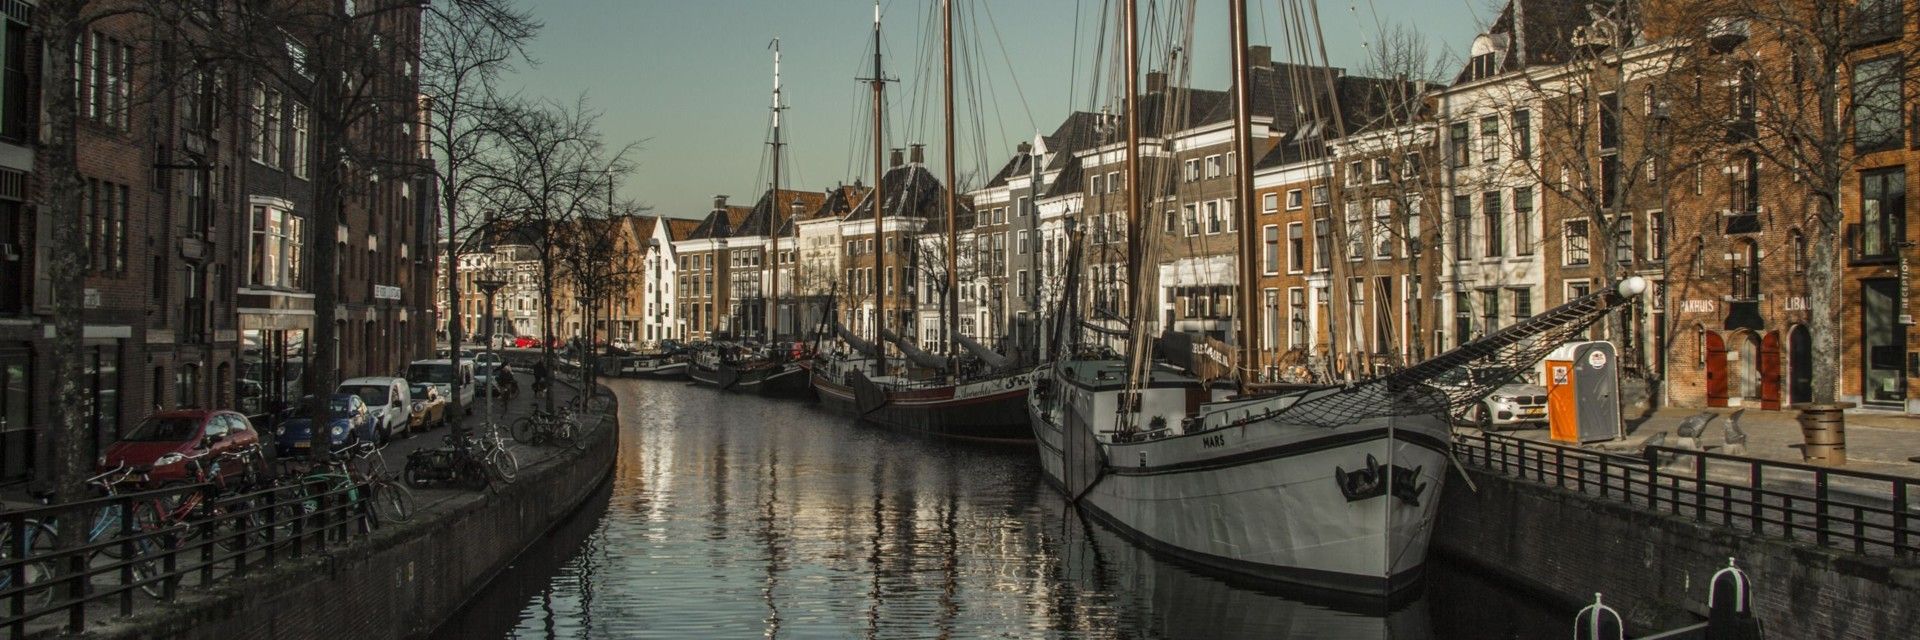 Historische stadswandeling Groningen